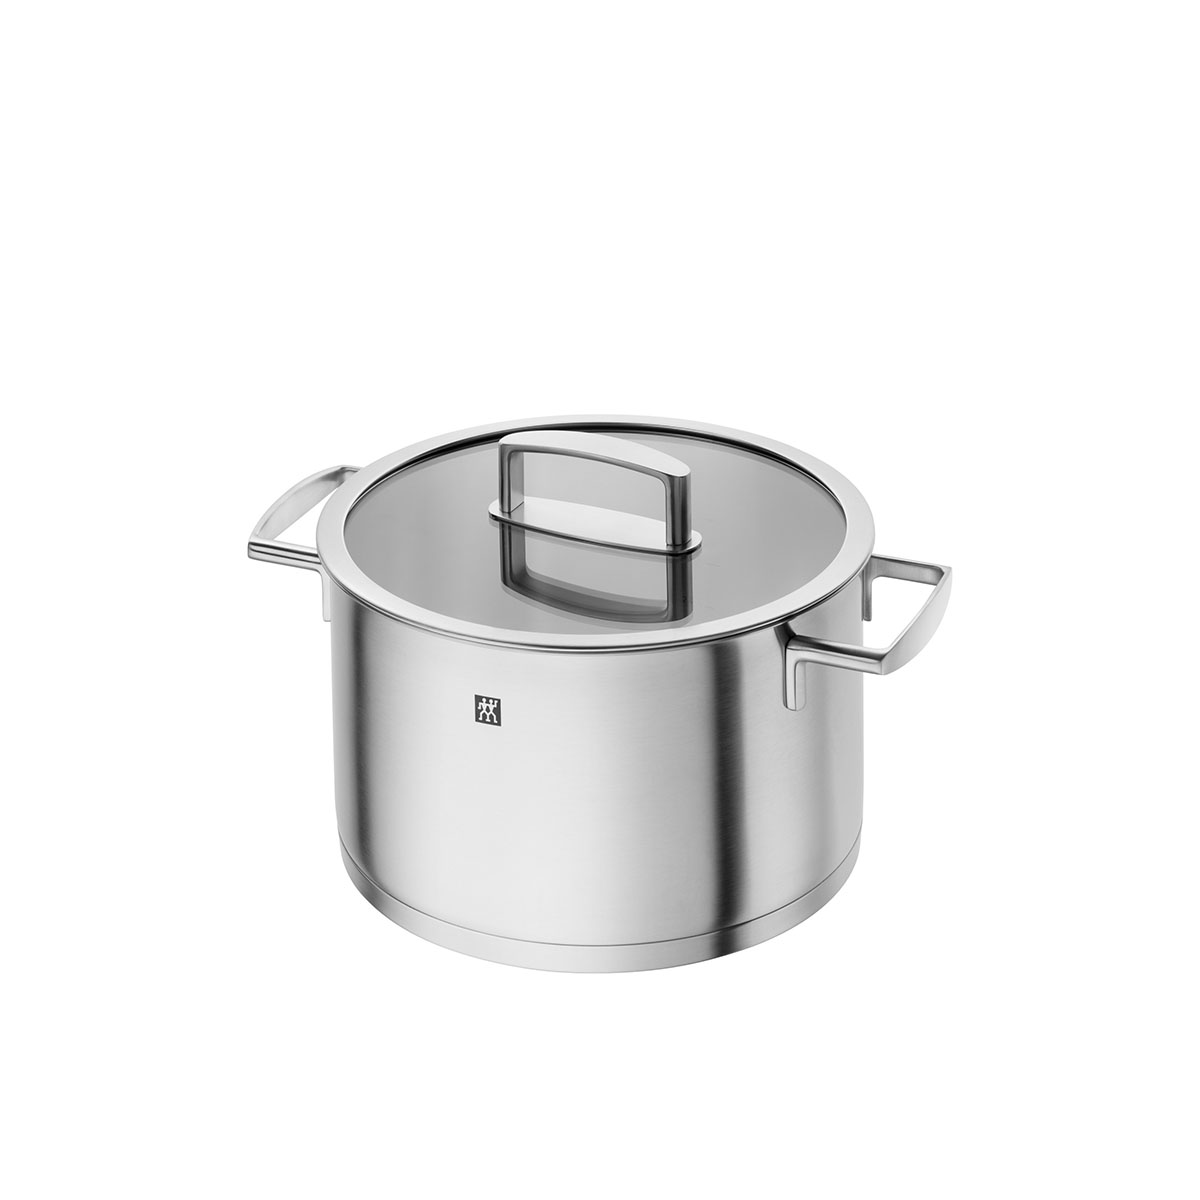 Pro 5.7L Stainless Steel Inner Pot - Fackelmann Housewares